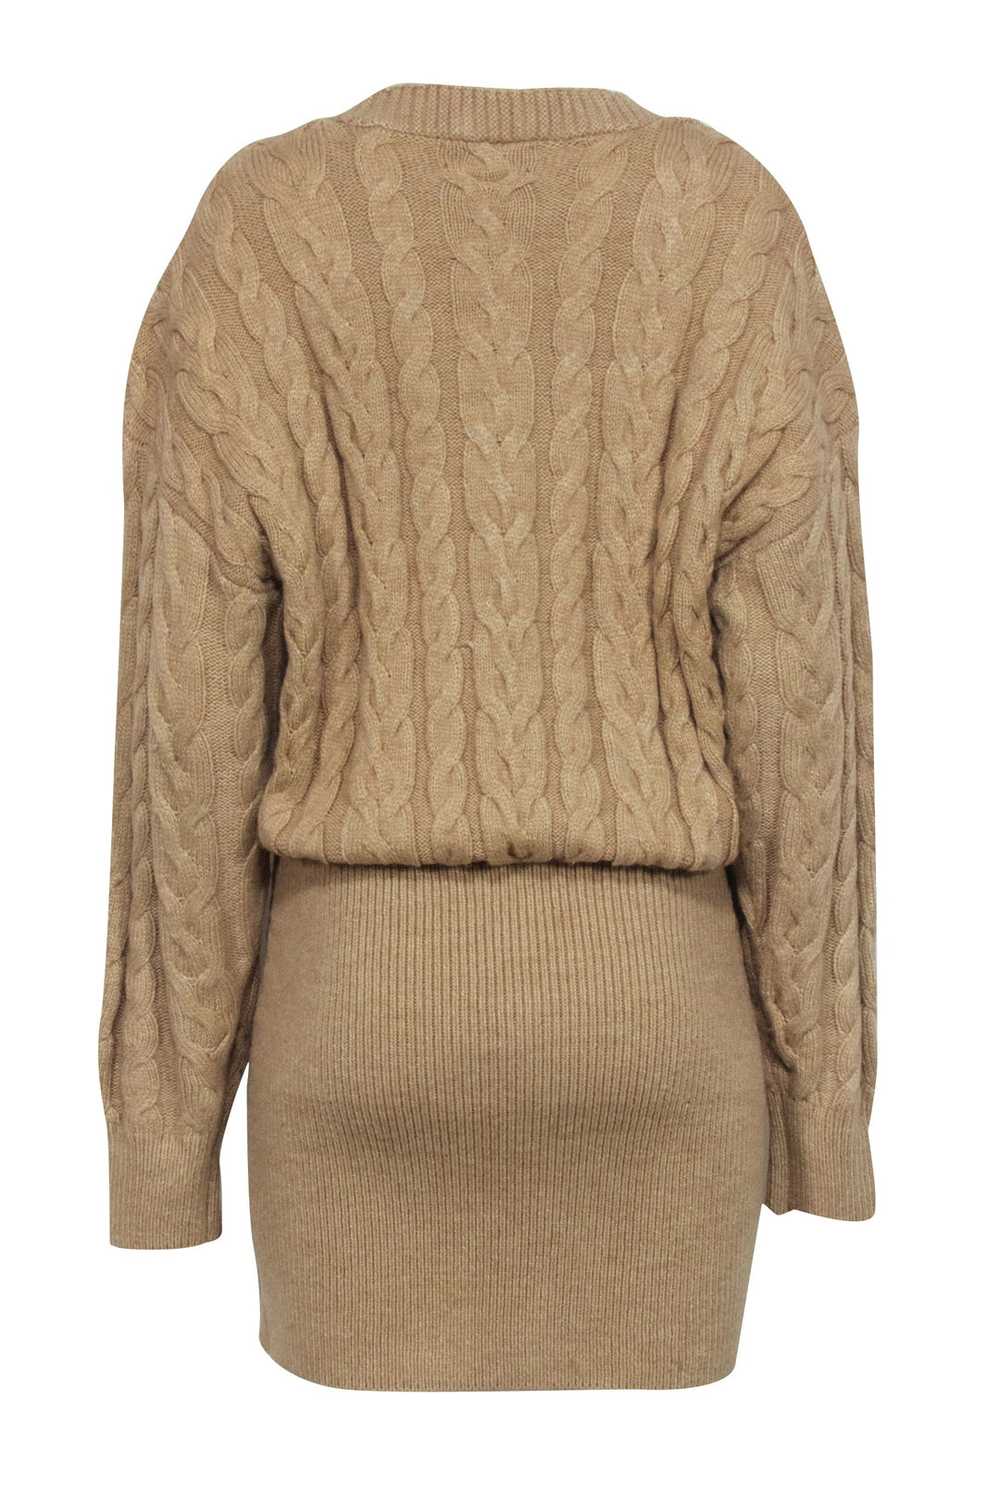 Retrofete - Beige Cable Knit Sweater Dress Sz M - image 3